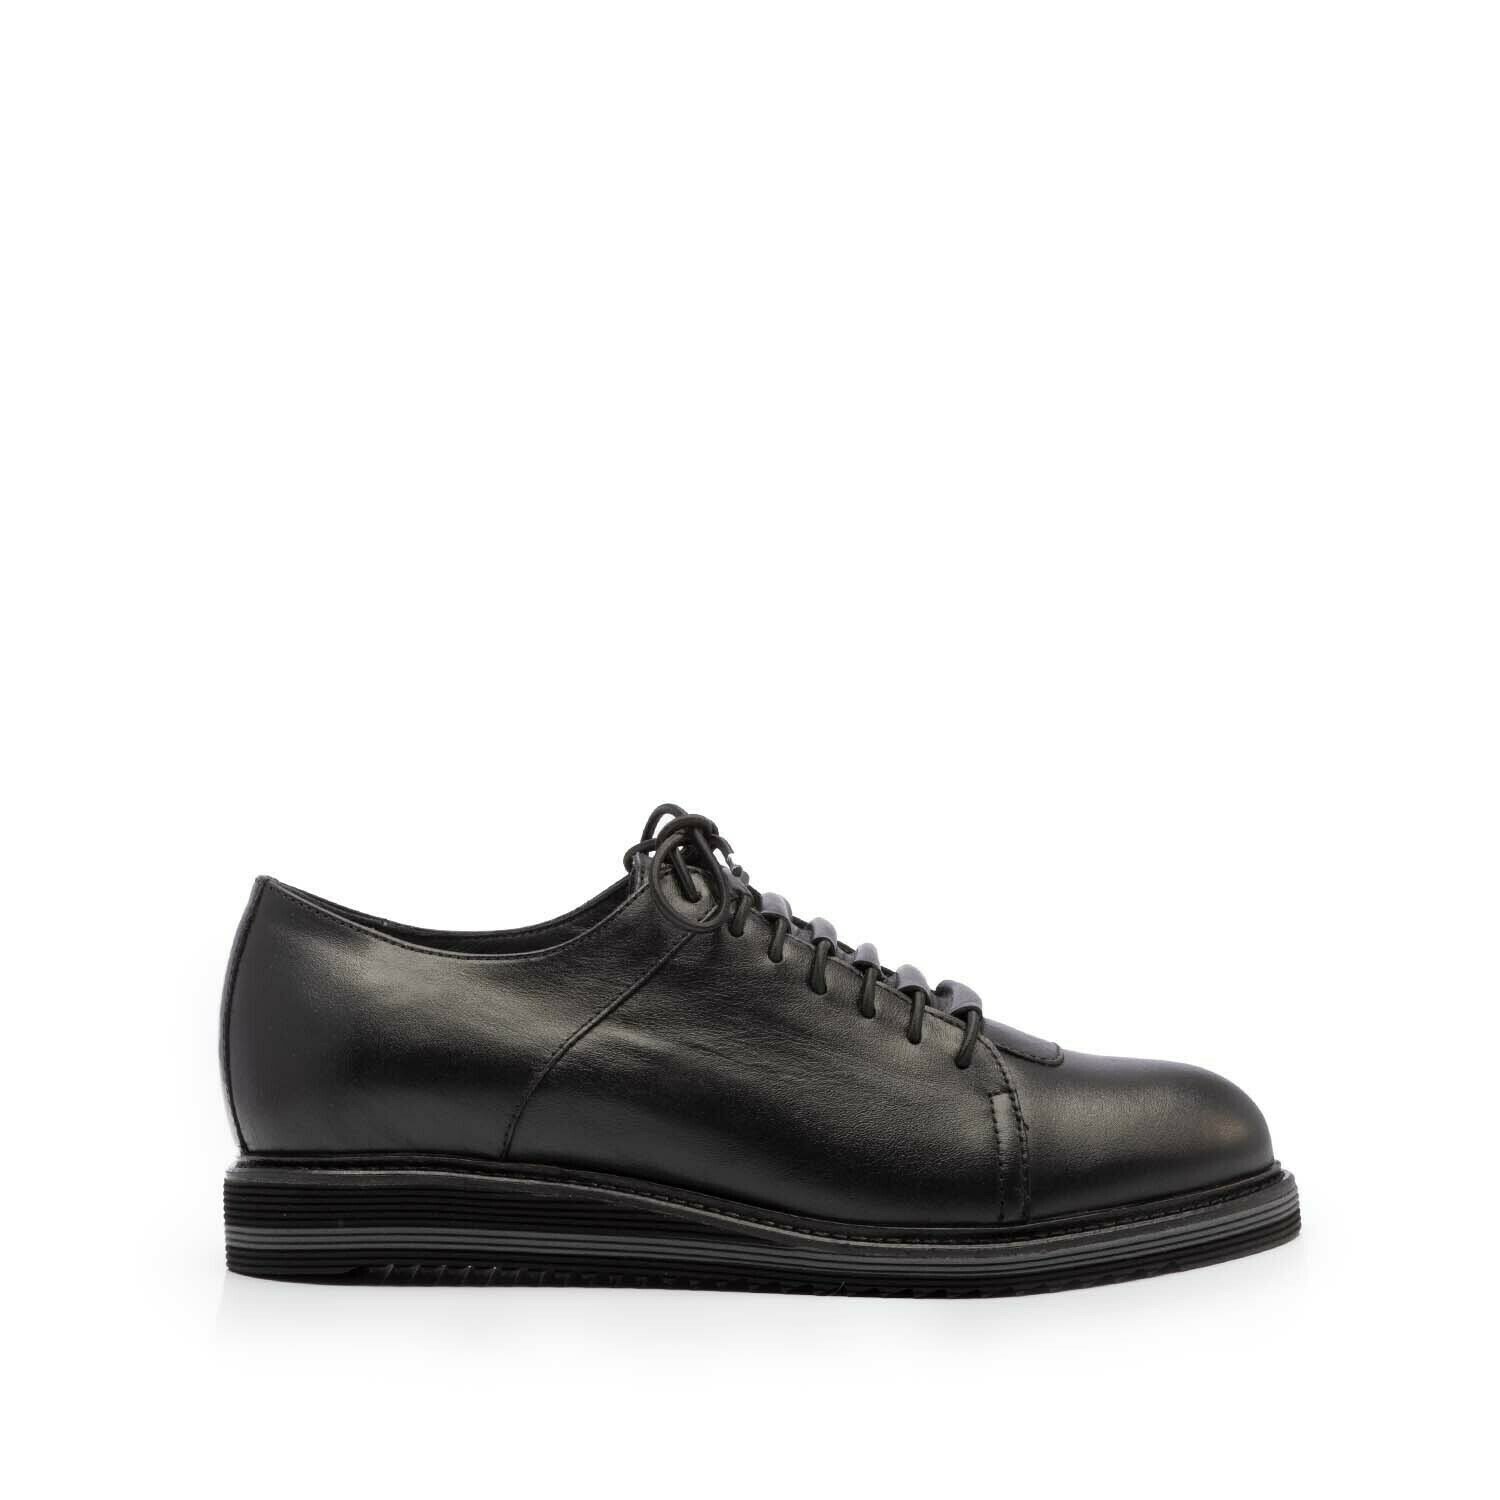 Pantofi casual barbați din piele naturală, Leofex - 599 Negru Box